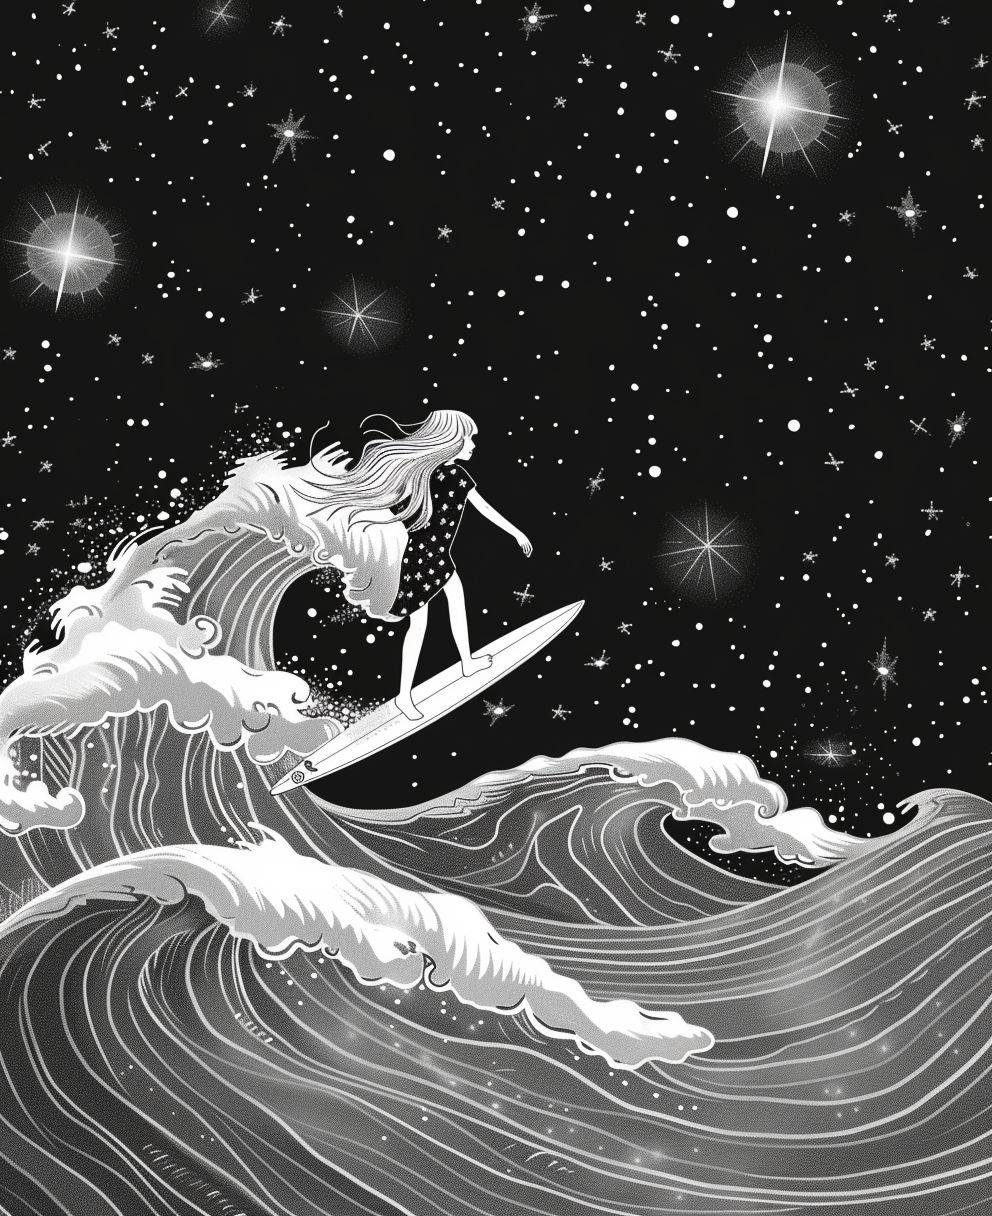 サーフボードに乗る女の子を描いたイラスト。超現実的な波、背景には輝く星があり、漫画風。太い線、細部は少なく、シェーディングやカラーはなし